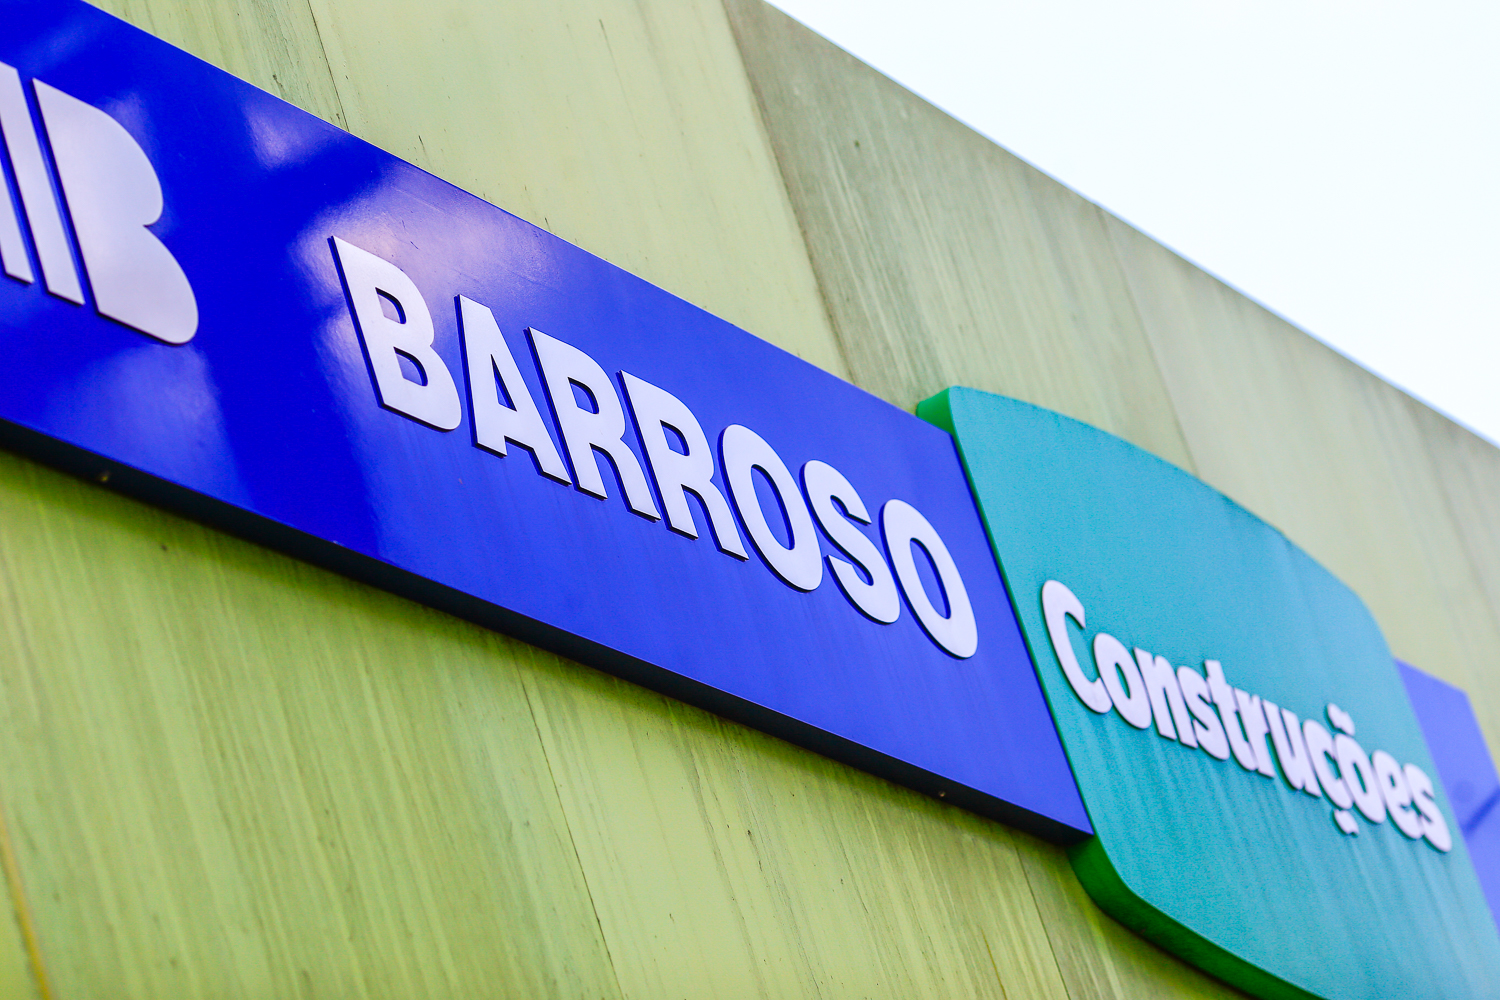 Grupo Barroso anuncia o fechamento de 14 lojas e demissões no Piauí